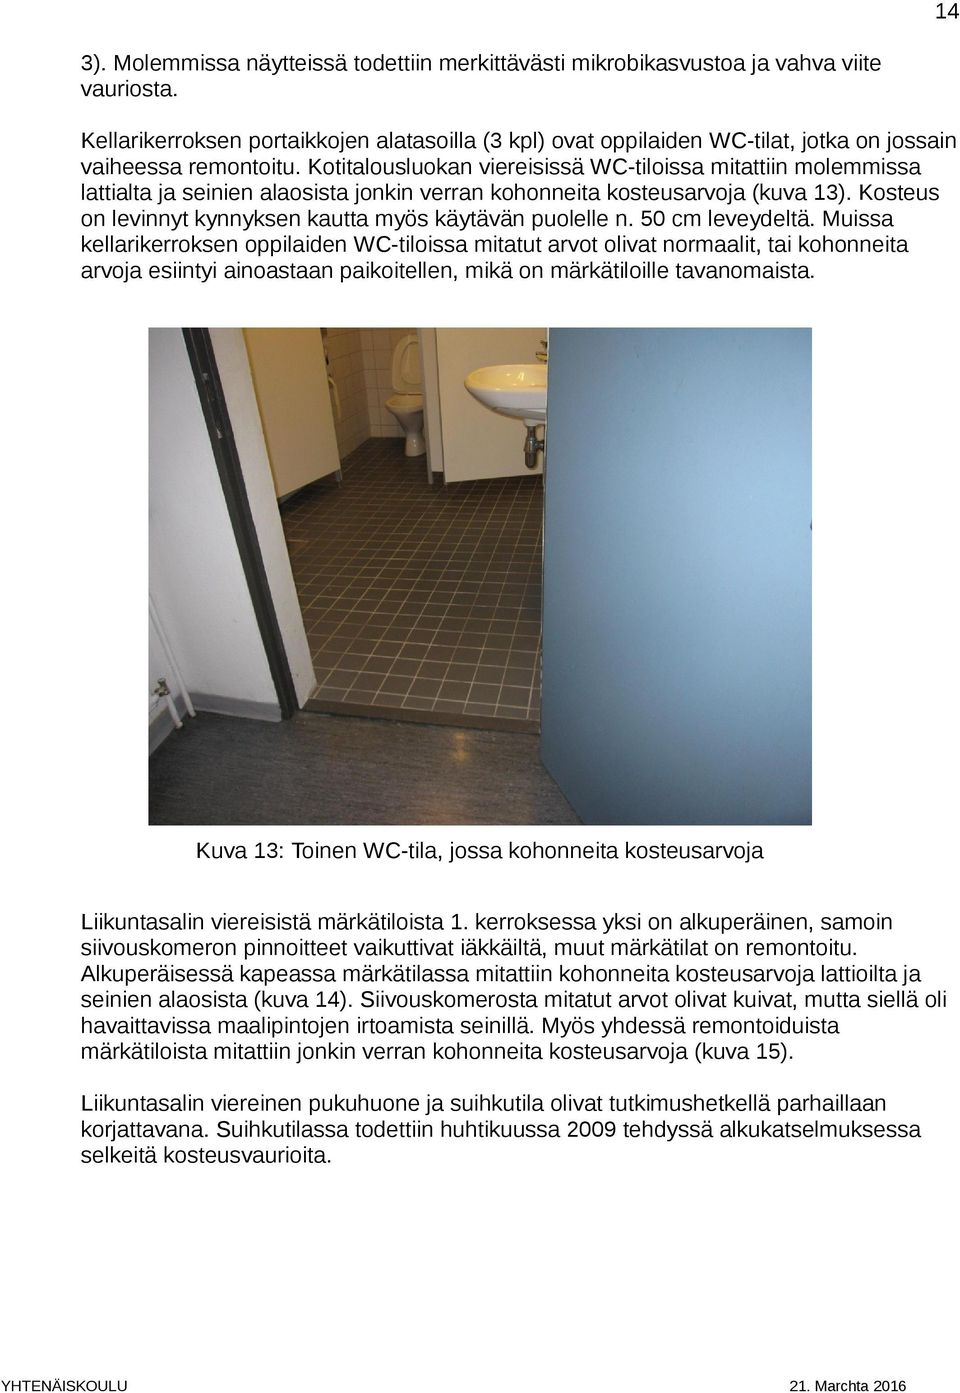 Kotitalousluokan viereisissä WC-tiloissa mitattiin molemmissa lattialta ja seinien alaosista jonkin verran kohonneita kosteusarvoja (kuva 13).